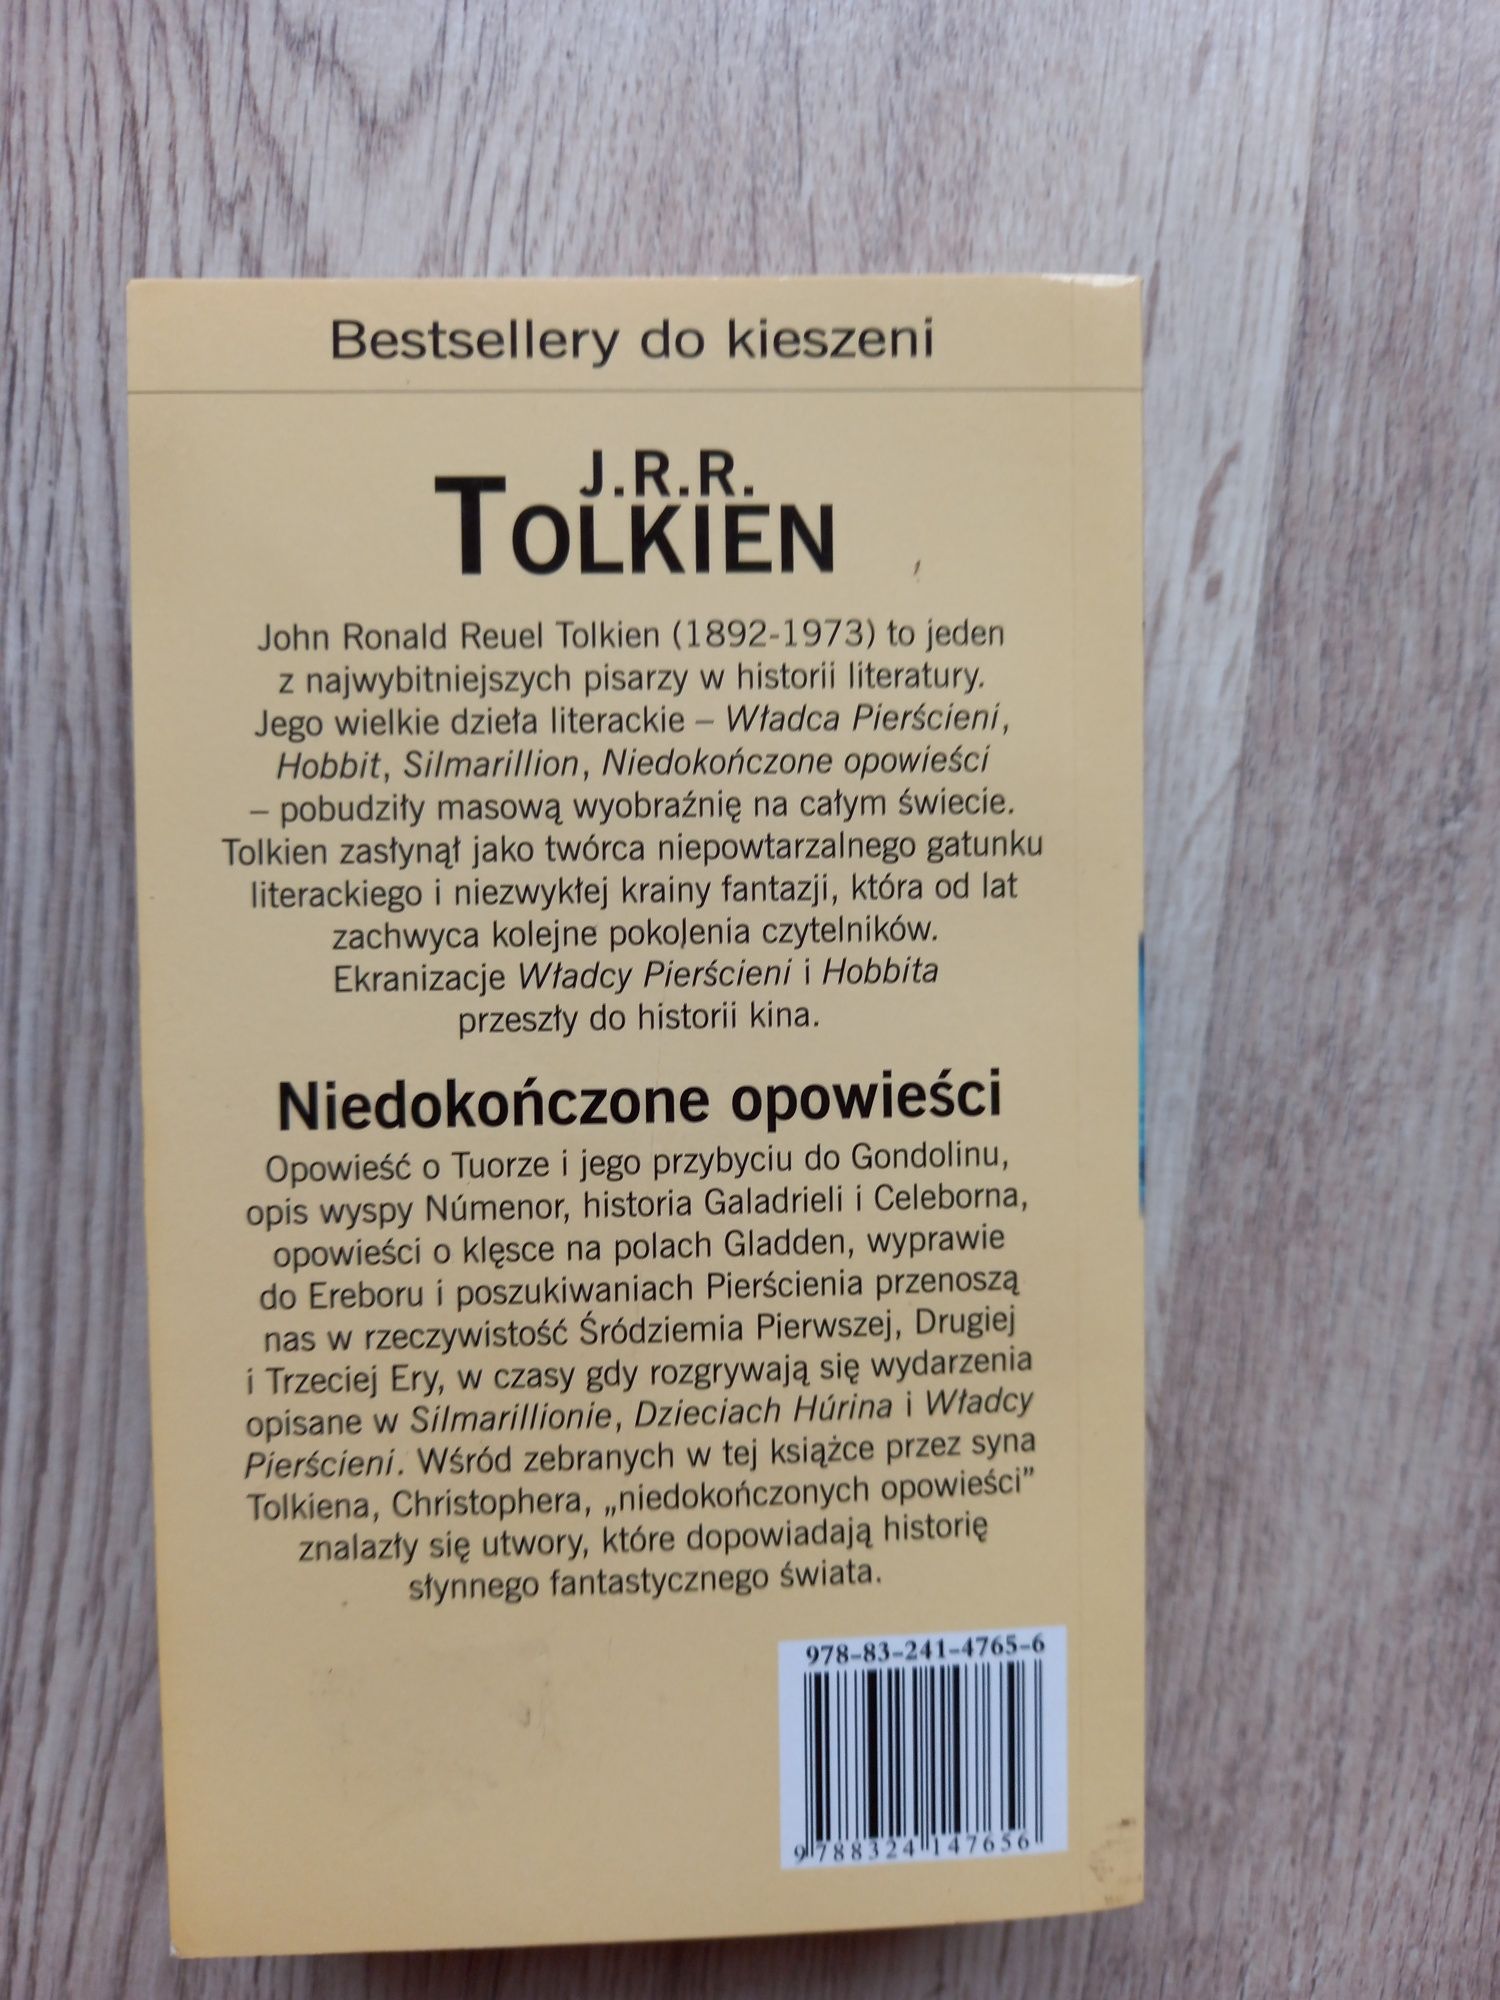 Niedokończone opowieści J.R.R Tolkien